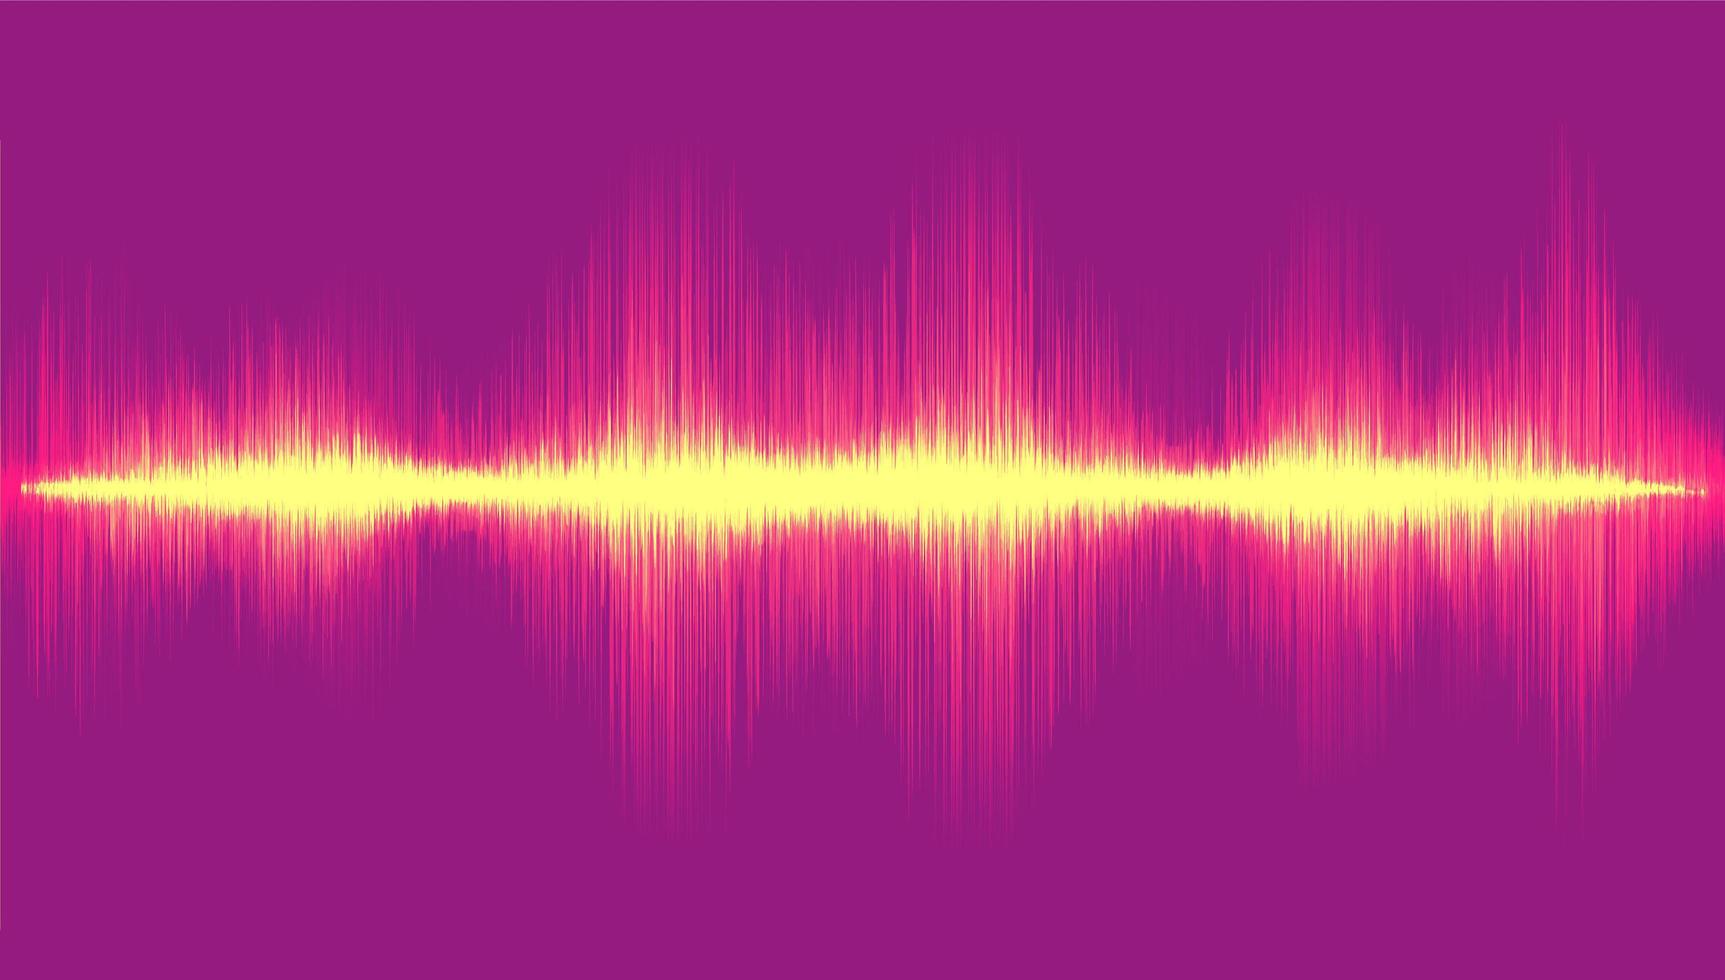 leichte digitale Schallwelle auf violettem Hintergrund, Technologiewellenkonzept, Entwurf für Musikstudio und Wissenschaft, Vektorillustration. vektor